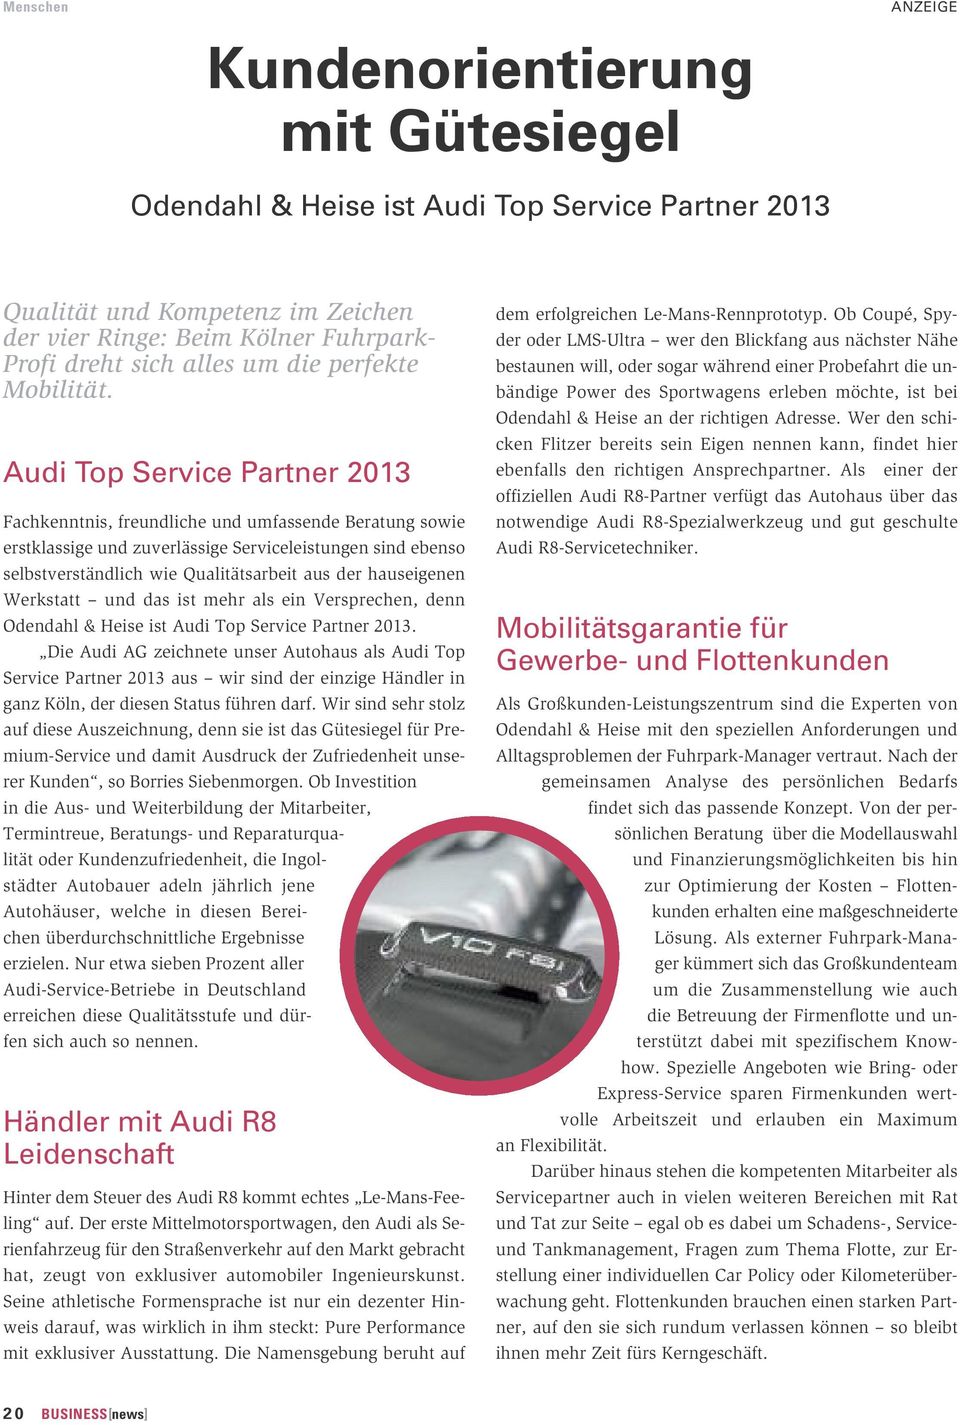 Audi Top Service Partner 2013 Fachkenntnis, freundliche und umfassende Beratung sowie erstklassige und zuverlässige Serviceleistungen sind ebenso selbstverständlich wie Qualitätsarbeit aus der